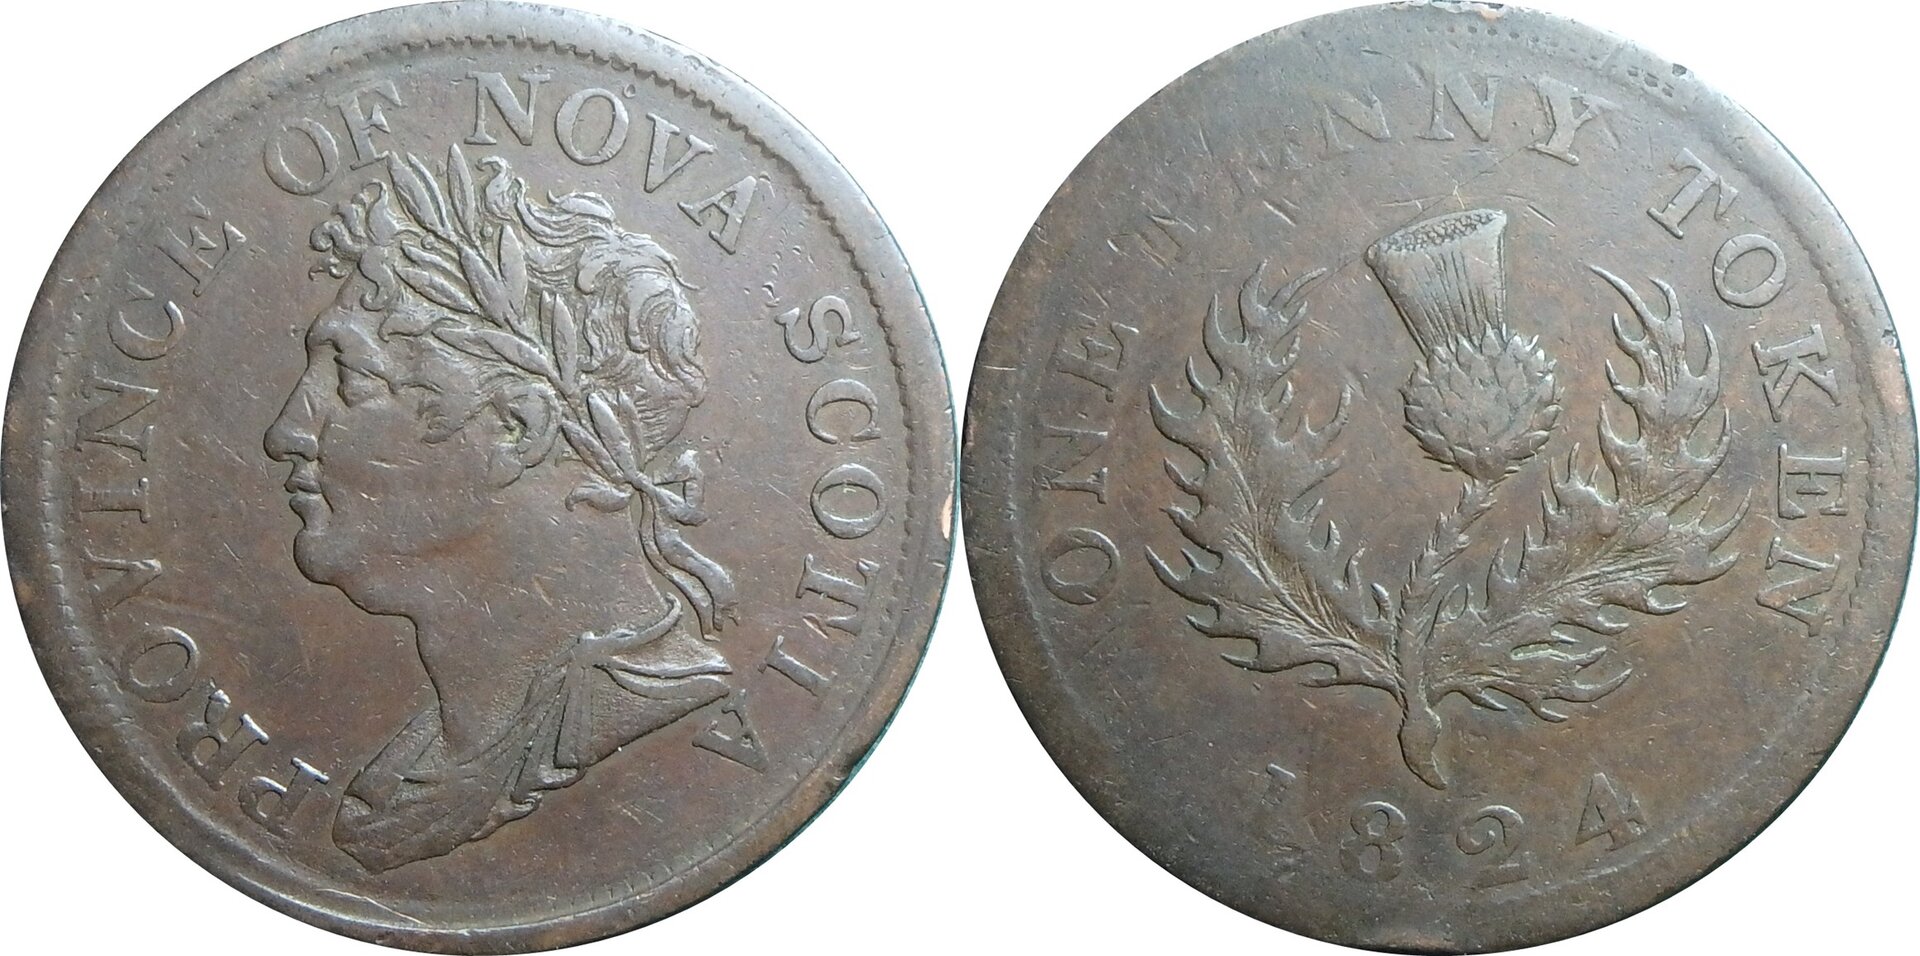 1824 CA-NS 1 p token.jpg